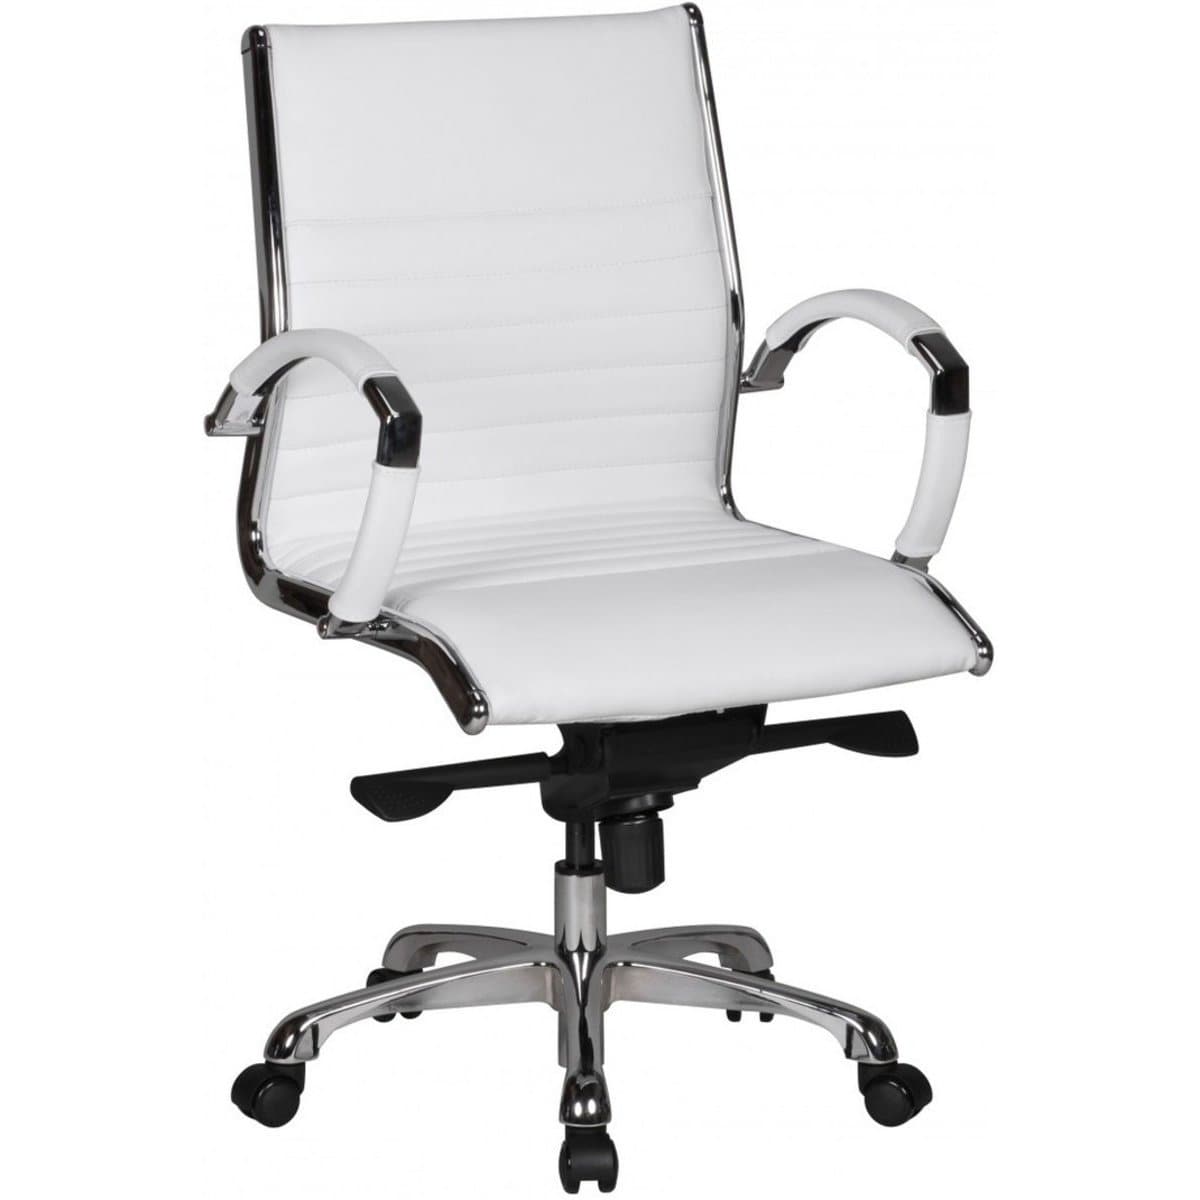 Chaise de bureau Nancy's Fairmount en cuir - Chaise de bureau ergonomique - Chaise de bureau pour adultes